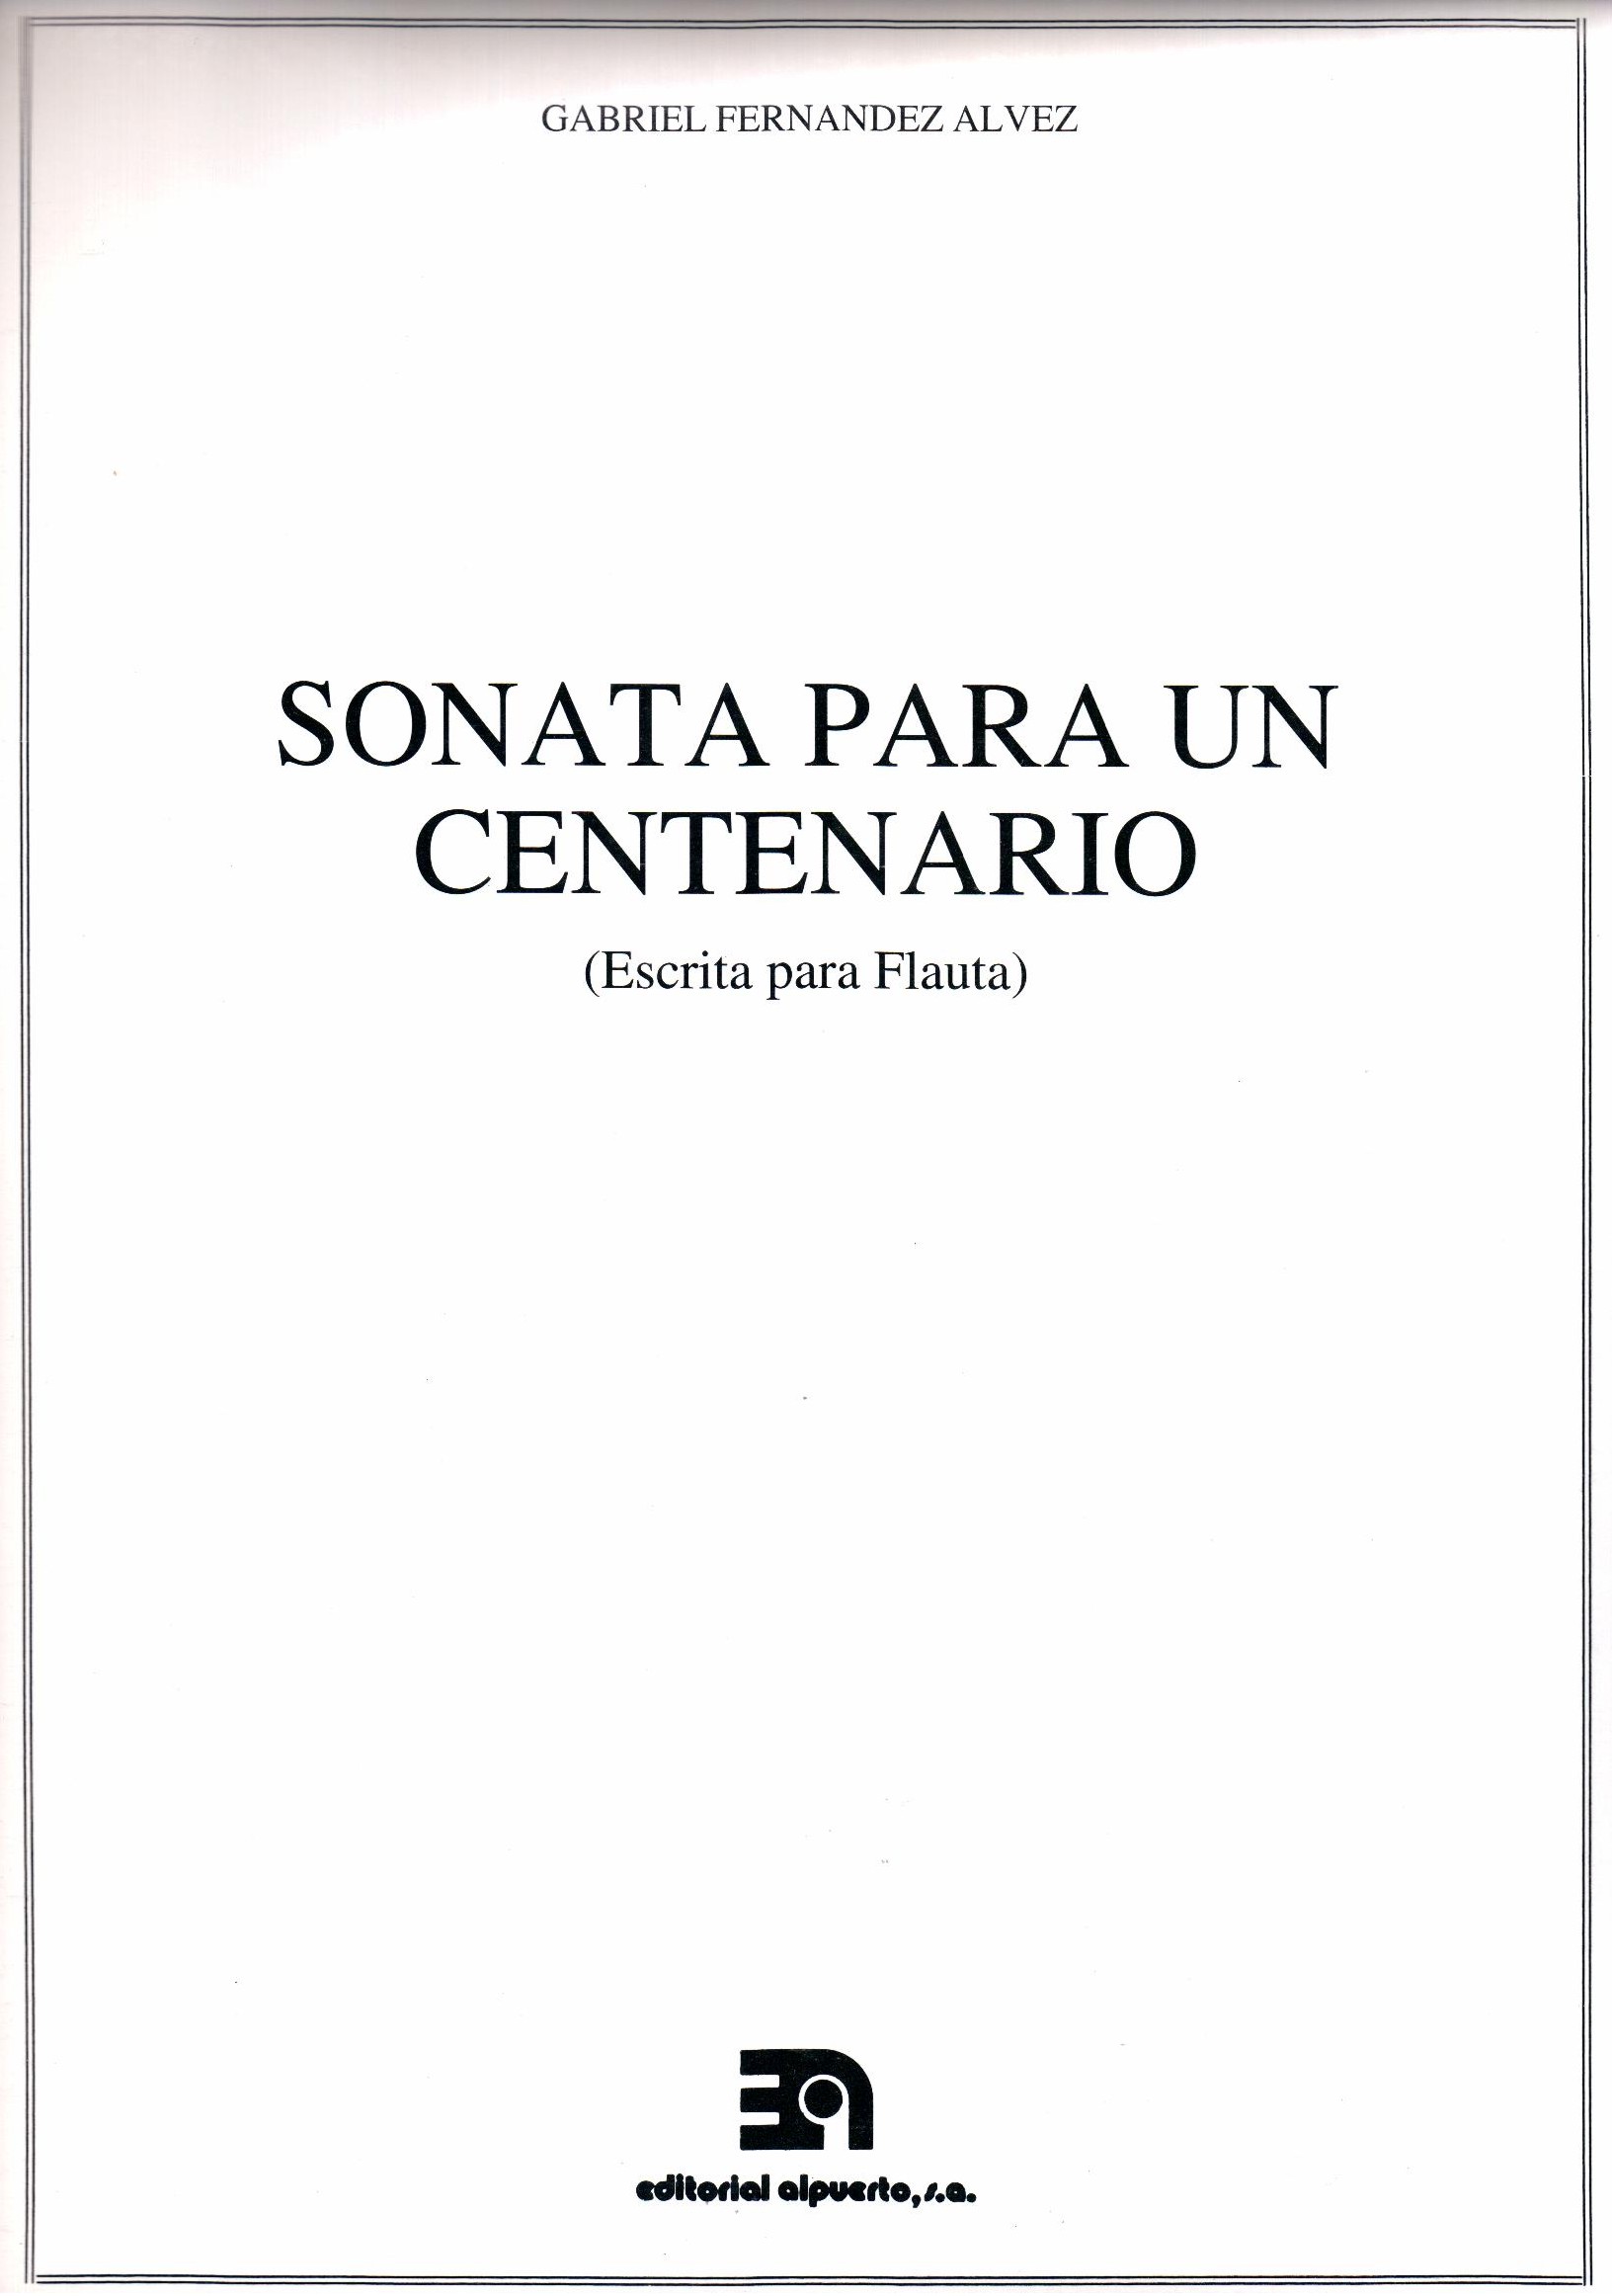 Sonata para un centenario
(Escrita para Flauta)